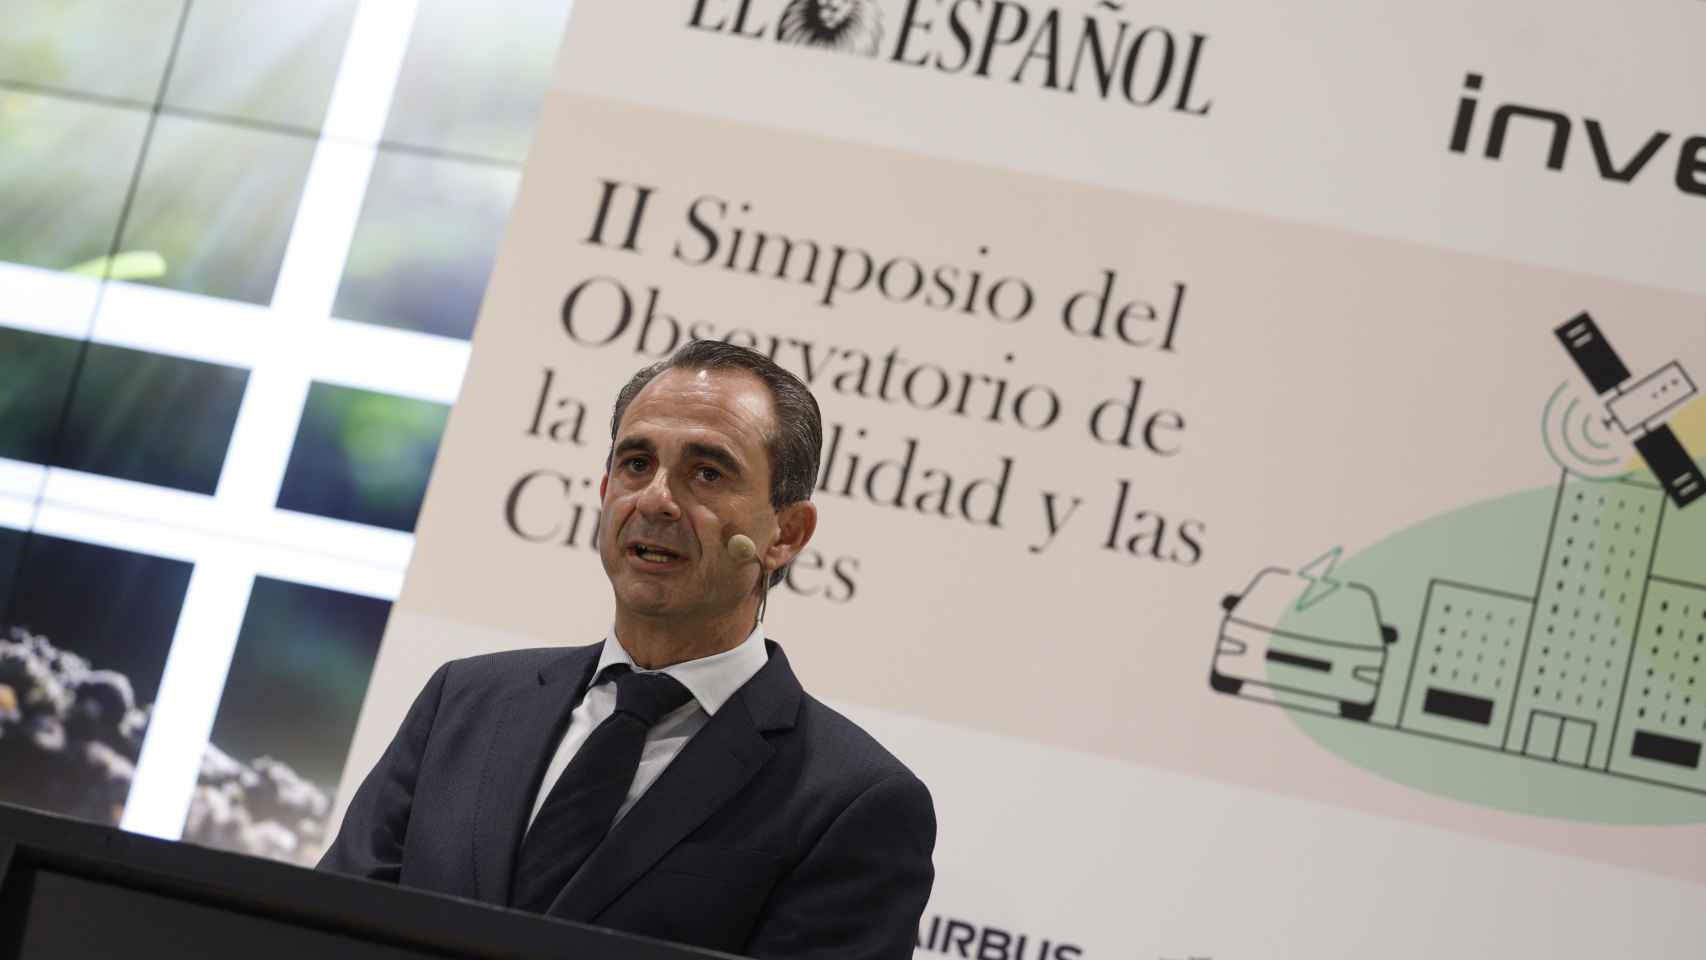 Manuel Díaz, socio responsable del sector de Automoción de PwC España, en la cuarta jornada del II Simposio del Observatorio de la Movilidad y las Ciudades.